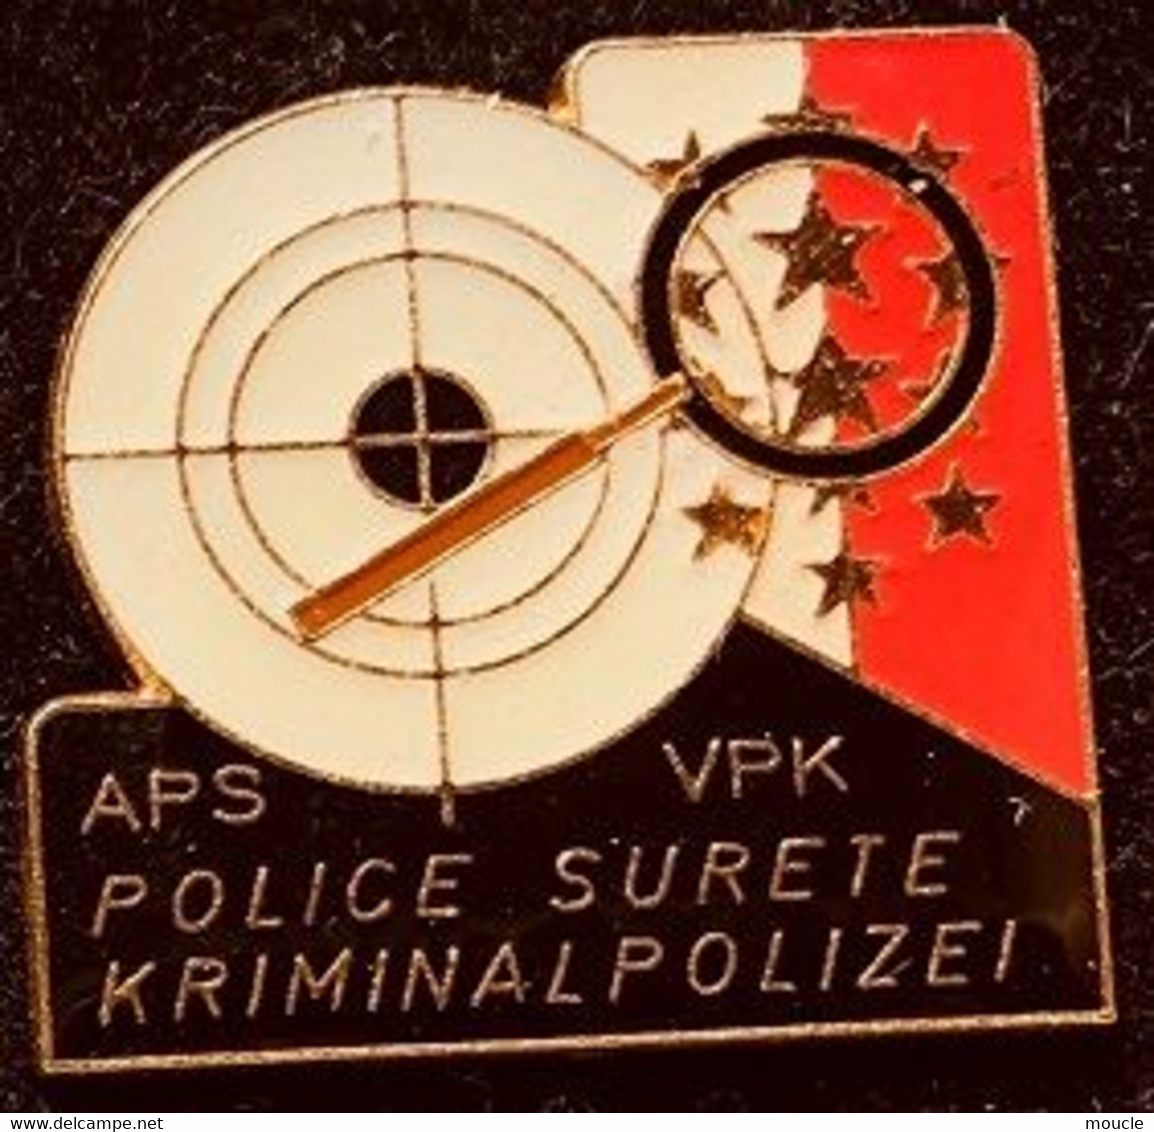 POLICE SURETE VALAISANNE - WALLIS KRIMNAL POLIZEI - SUISSE -  POLICIA - SCHWEIZ - SWITZERLAND - APS - VPK - LOUPE-  (27) - Policia